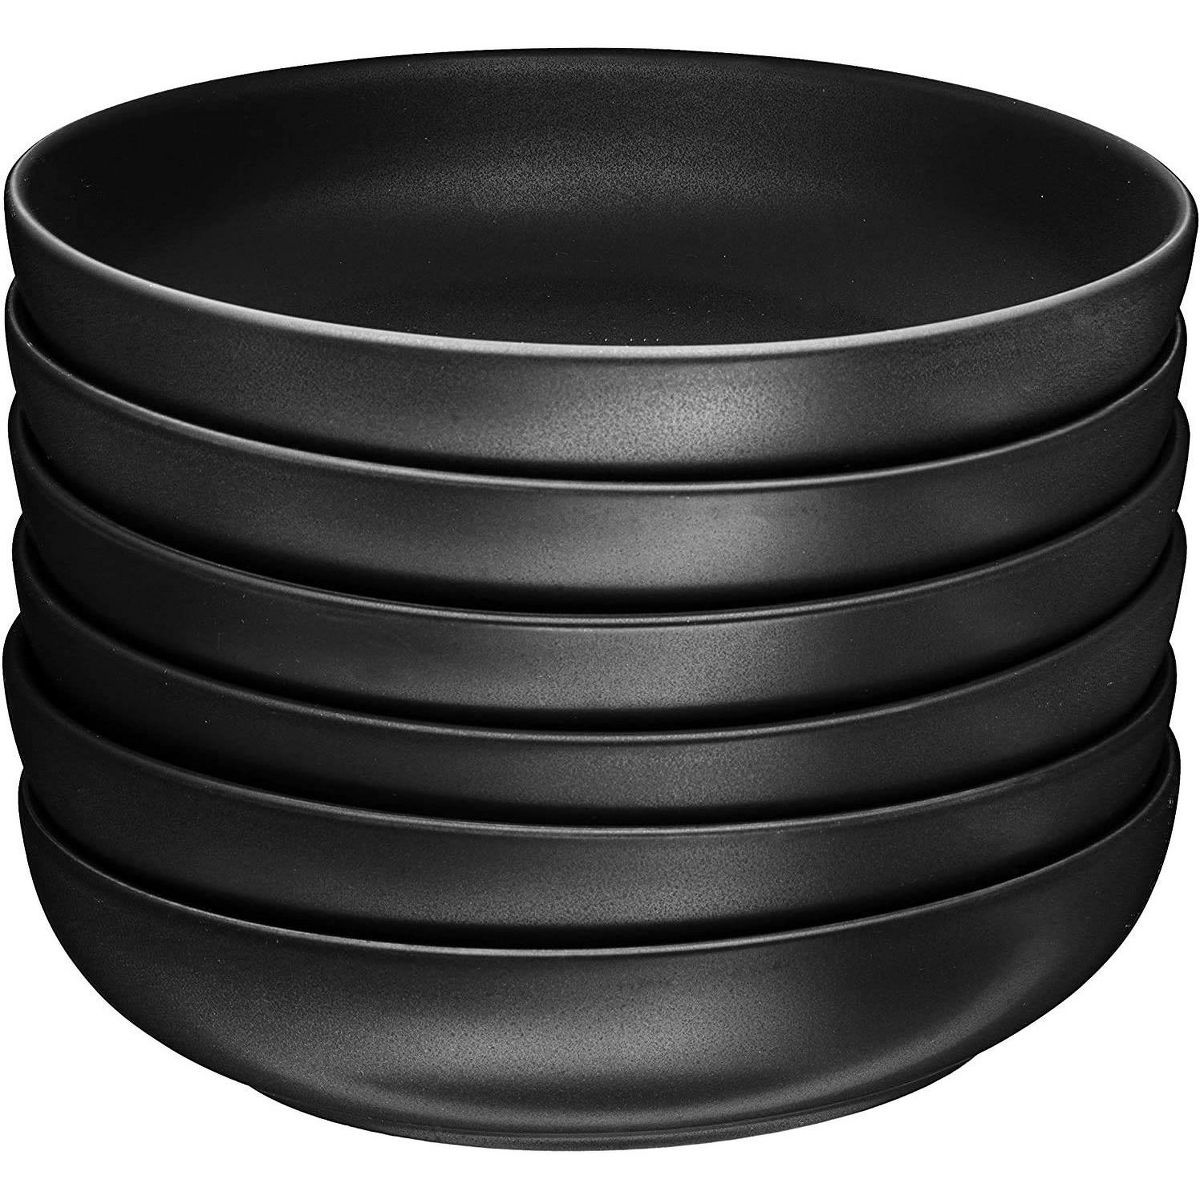 Bruntmor 24oz Porcelain Baking Bowls with Handles for Soup, Salad and Pasta Bowls ,6-Piece, Black | Target